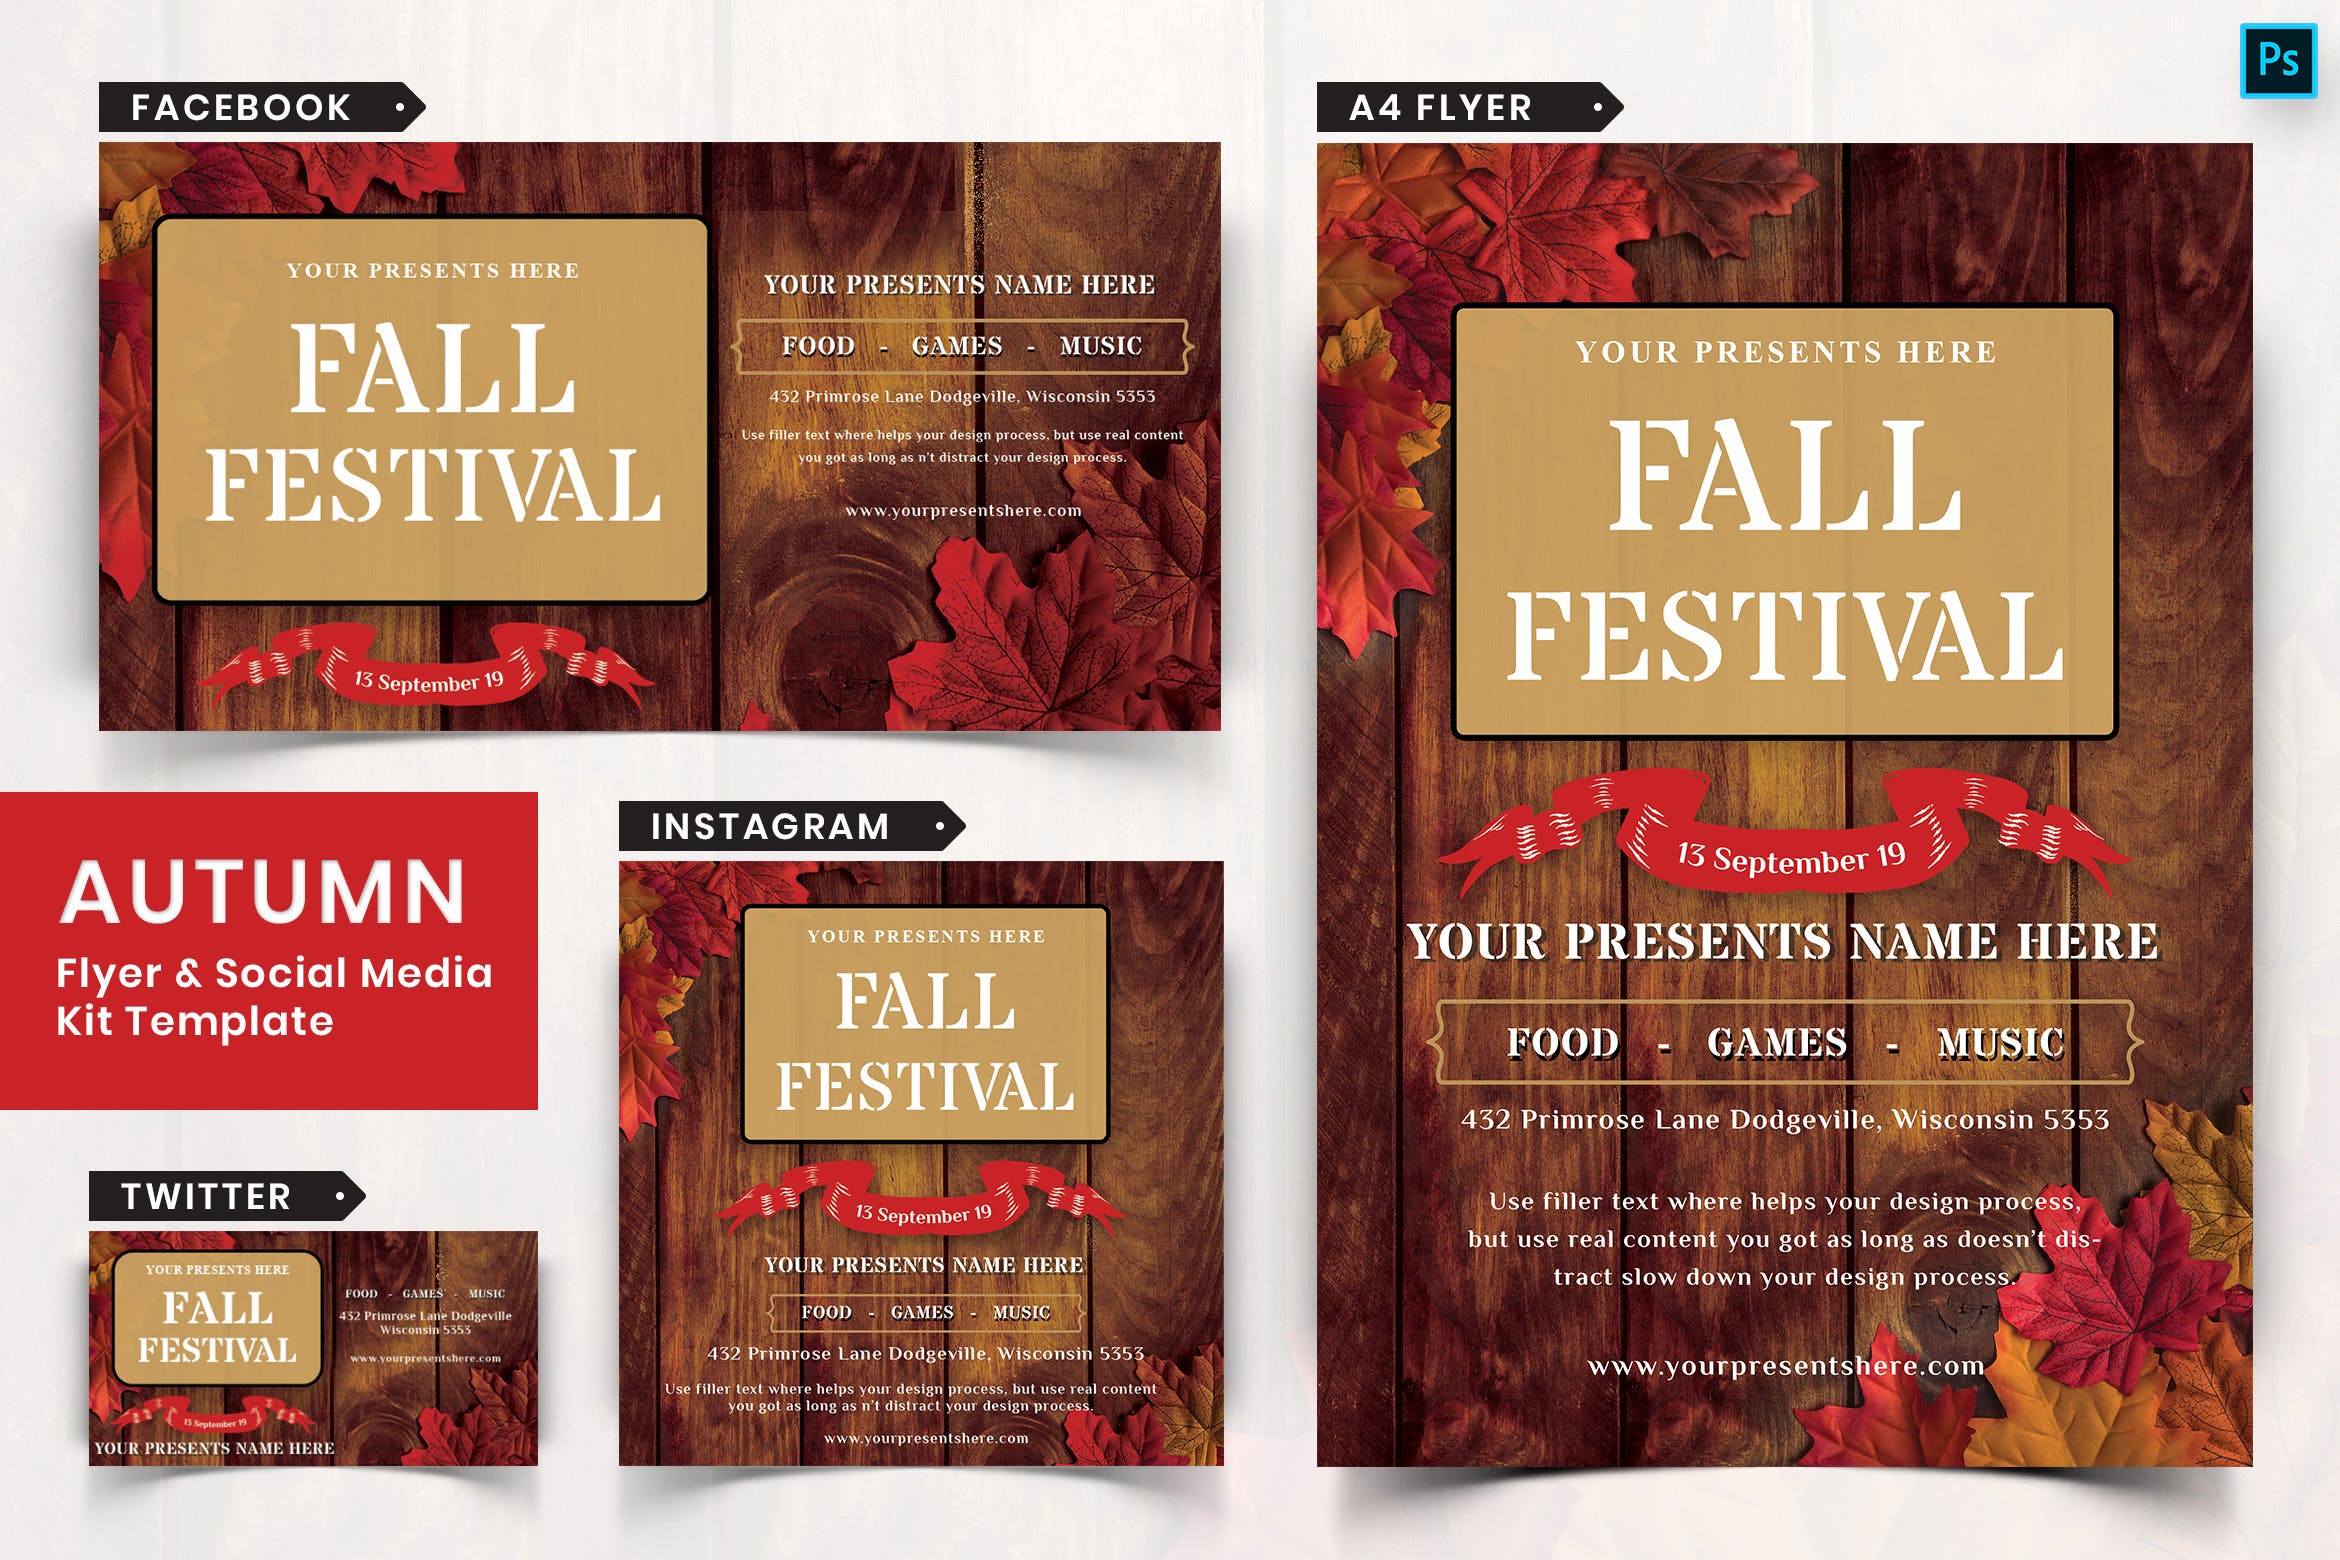 秋季节日传单和&社交媒体设计模板非凡图库精选套装06 Autumn Festival Flyer & Social Media Pack-06插图